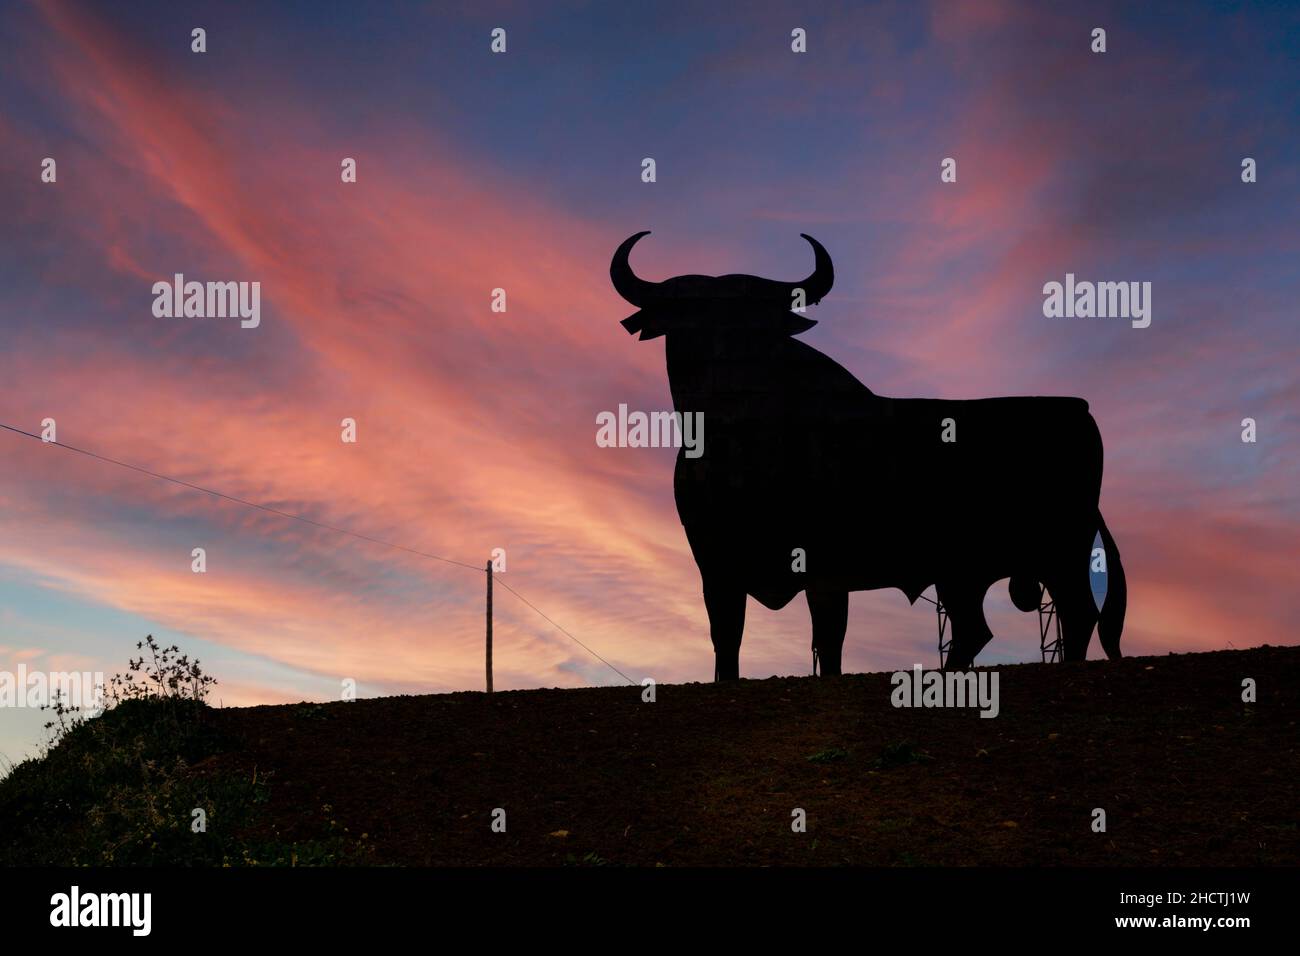 Ein Osborne Black Bull Schild. Dieses befindet sich in der Nähe von Casabermeja, Provinz Malaga, Andalusien, Südspanien. Das Bullenzeichen wurde ursprünglich zur Werbung gemacht Stockfoto